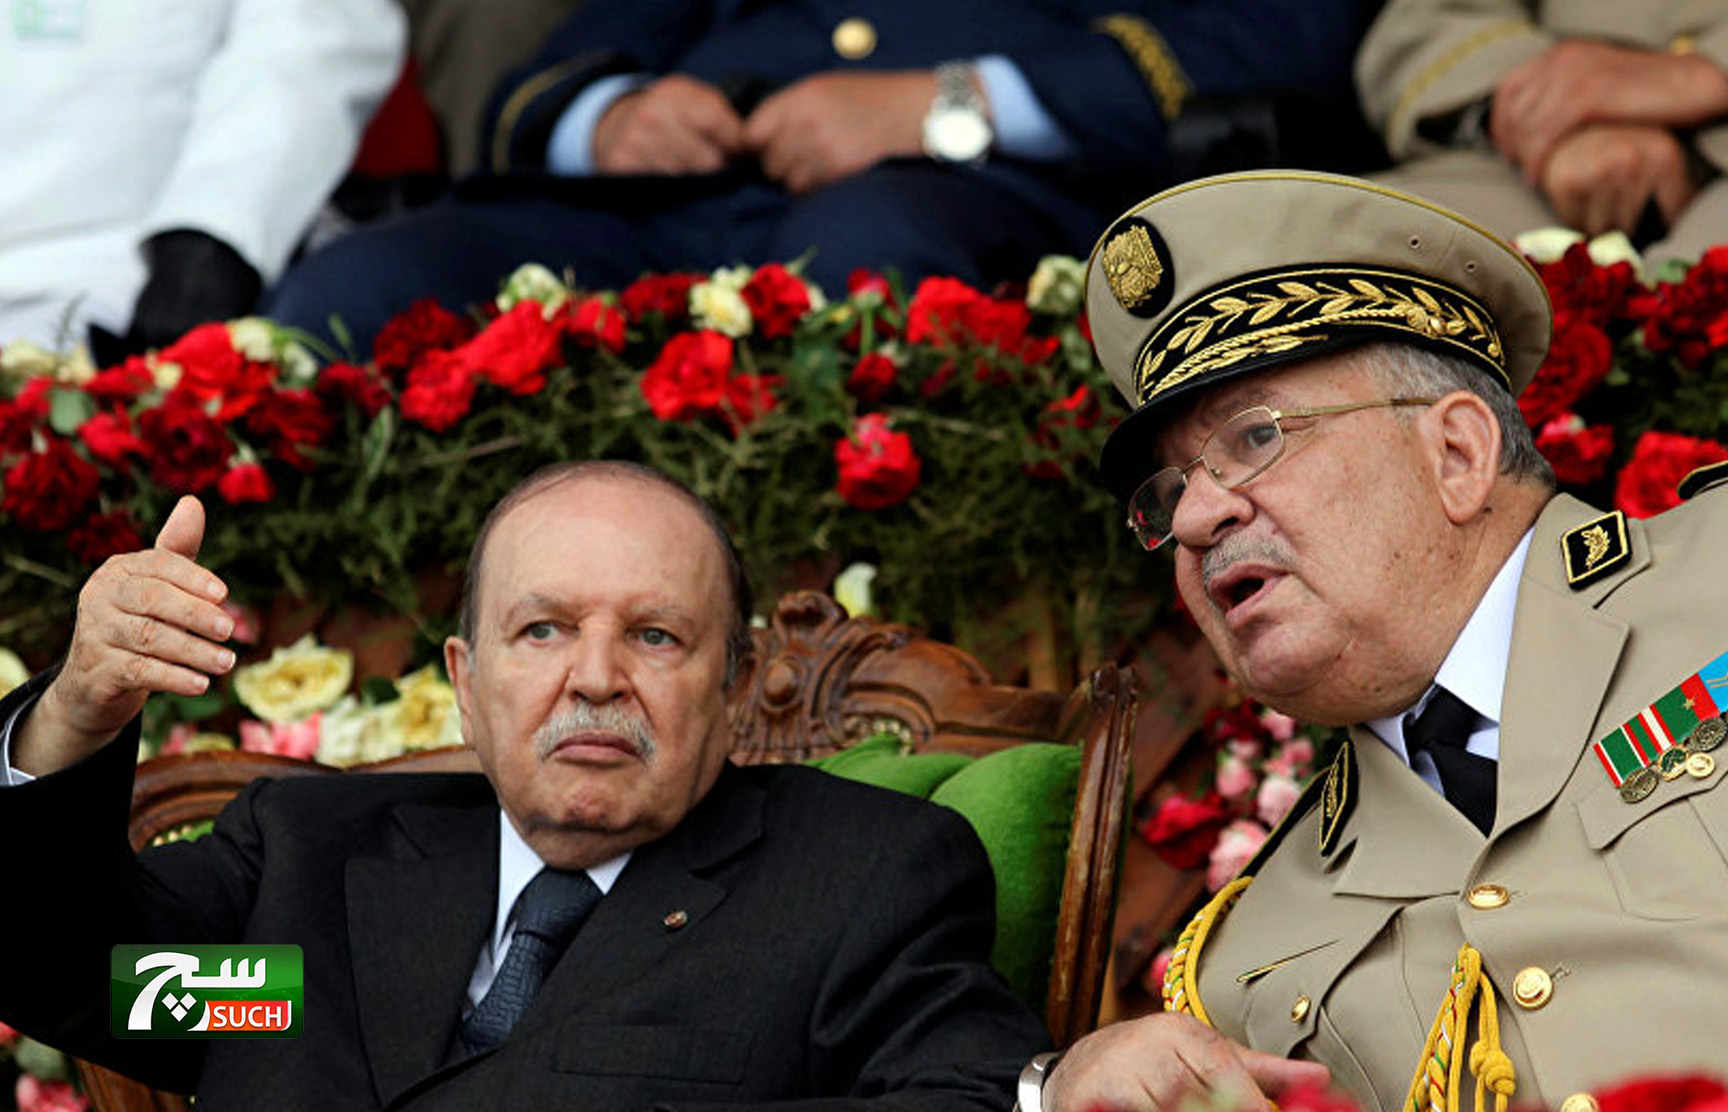 وزارة الدفاع الجزائرية تنفي إقالة رئيس الأركان